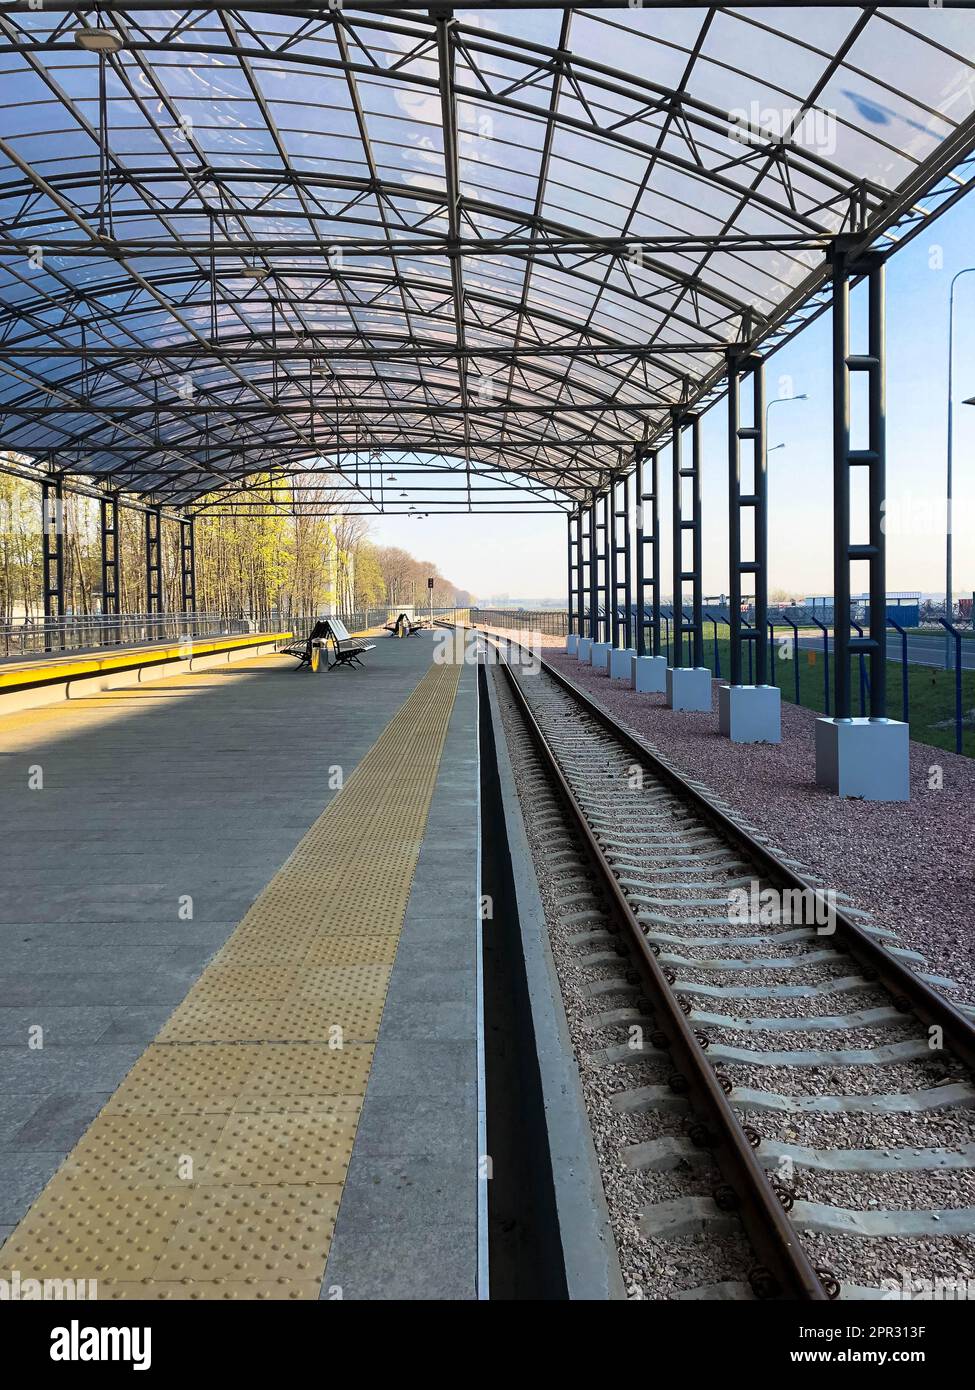 Moderner Bahnhof, Bahnhof mit transparentem Überdachung für Fahrgäste und Schienen. Stockfoto